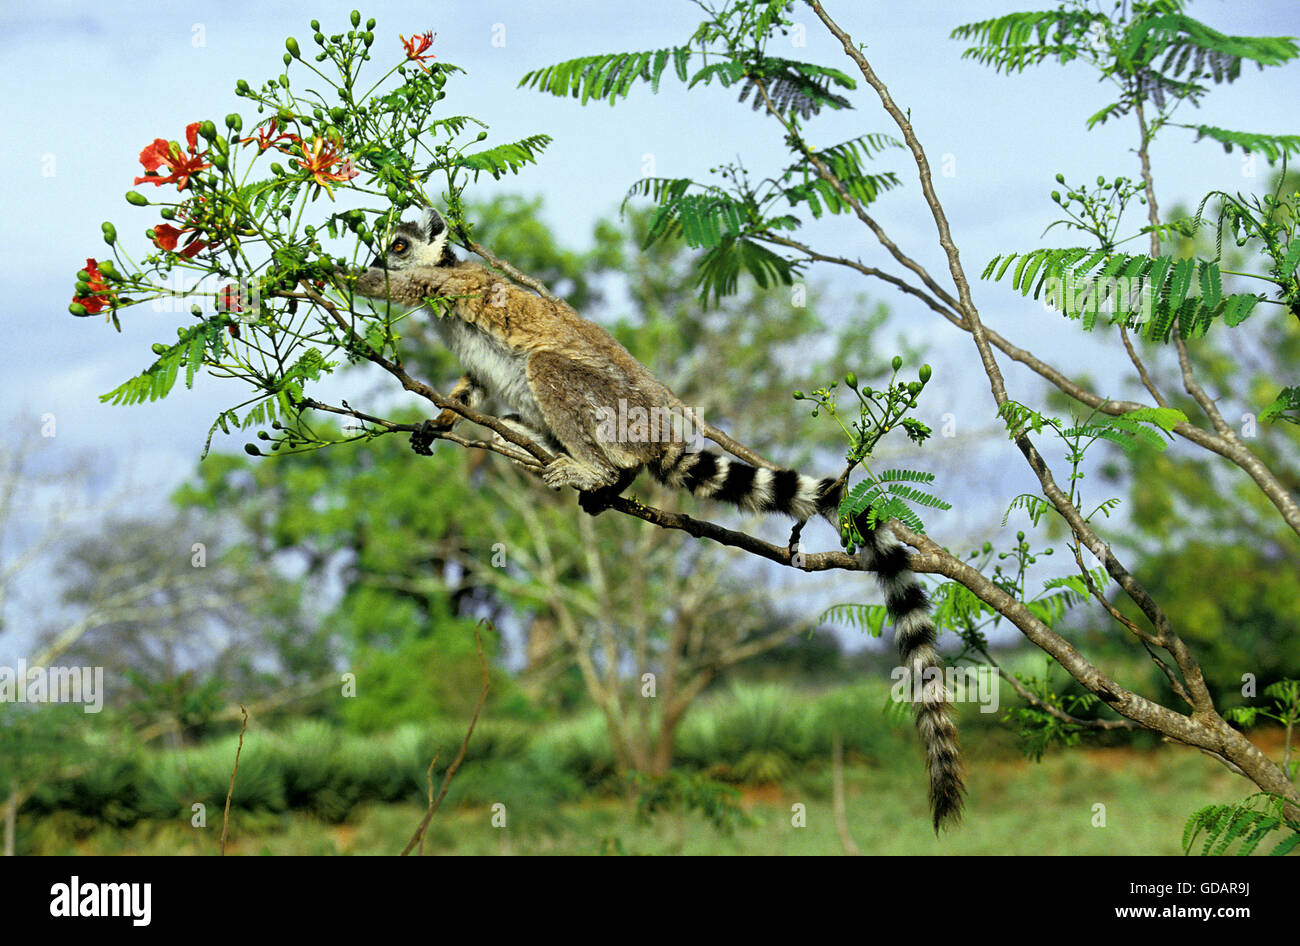 RING TAILED LEMUR lemur catta, DES PROFILS À LA RECHERCHE DE NOURRITURE Dans l'arbre flamboyant, MADAGASCAR Banque D'Images